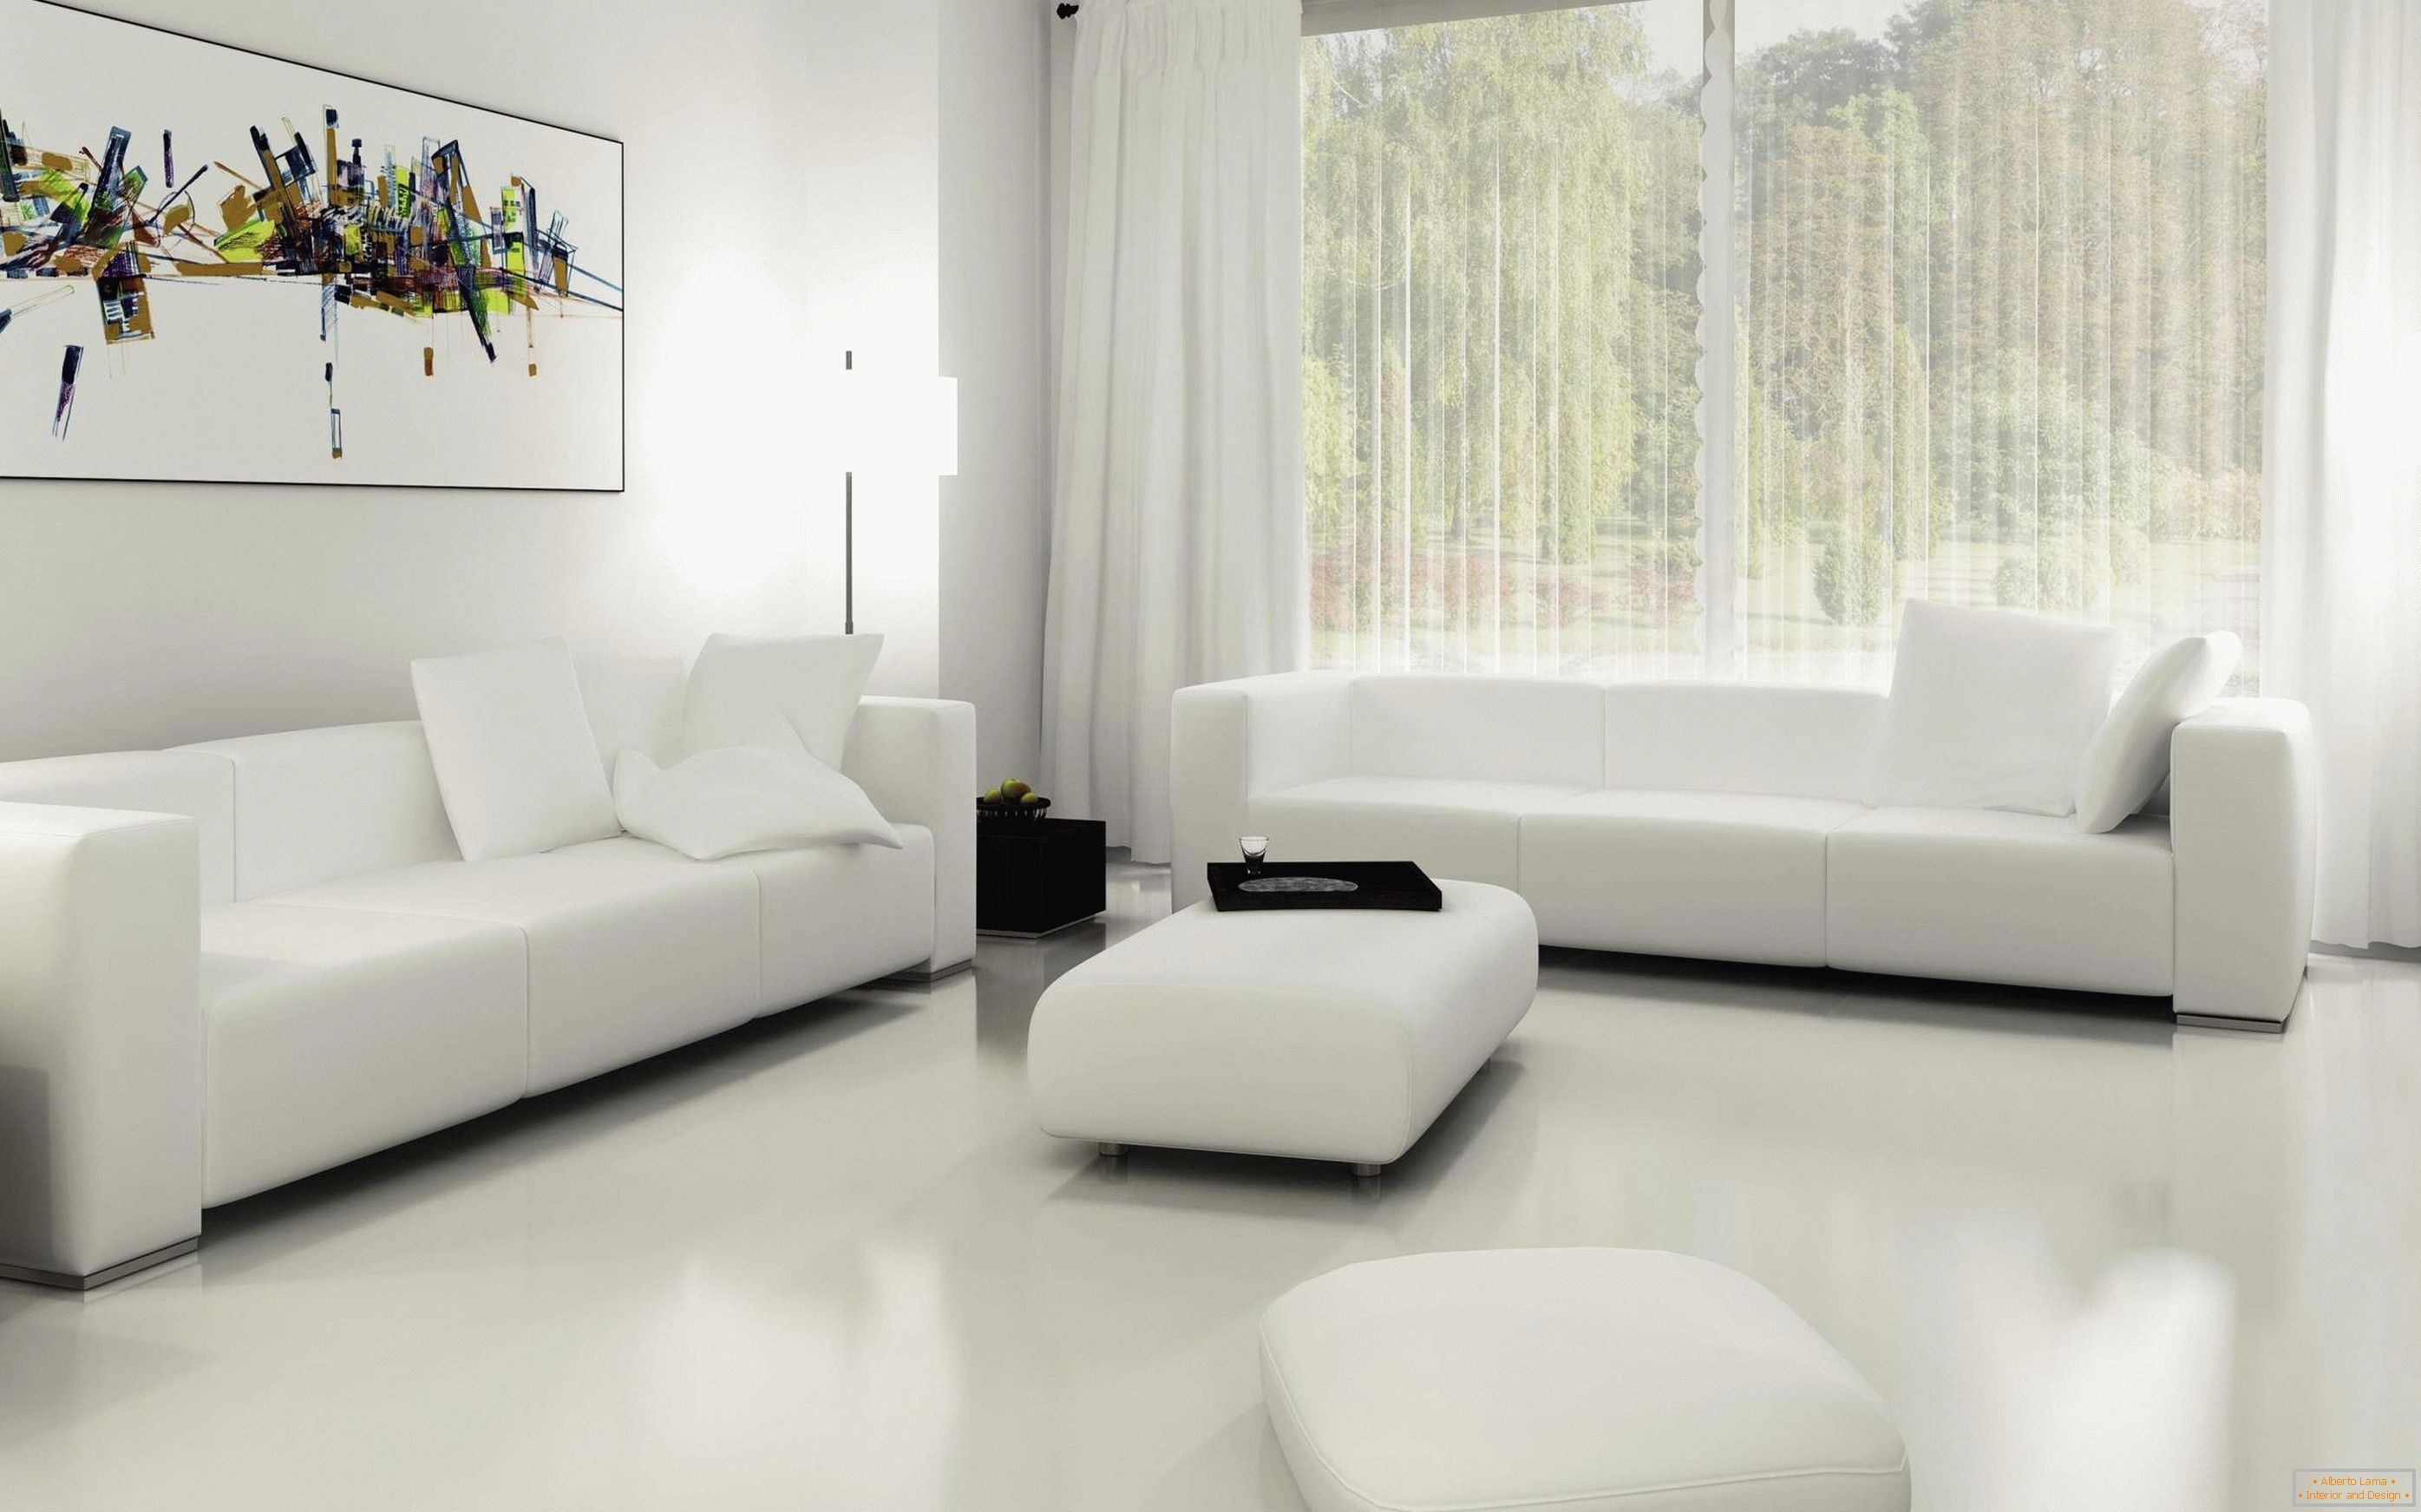 Bílá obývací pokoj s oknem v podlaze